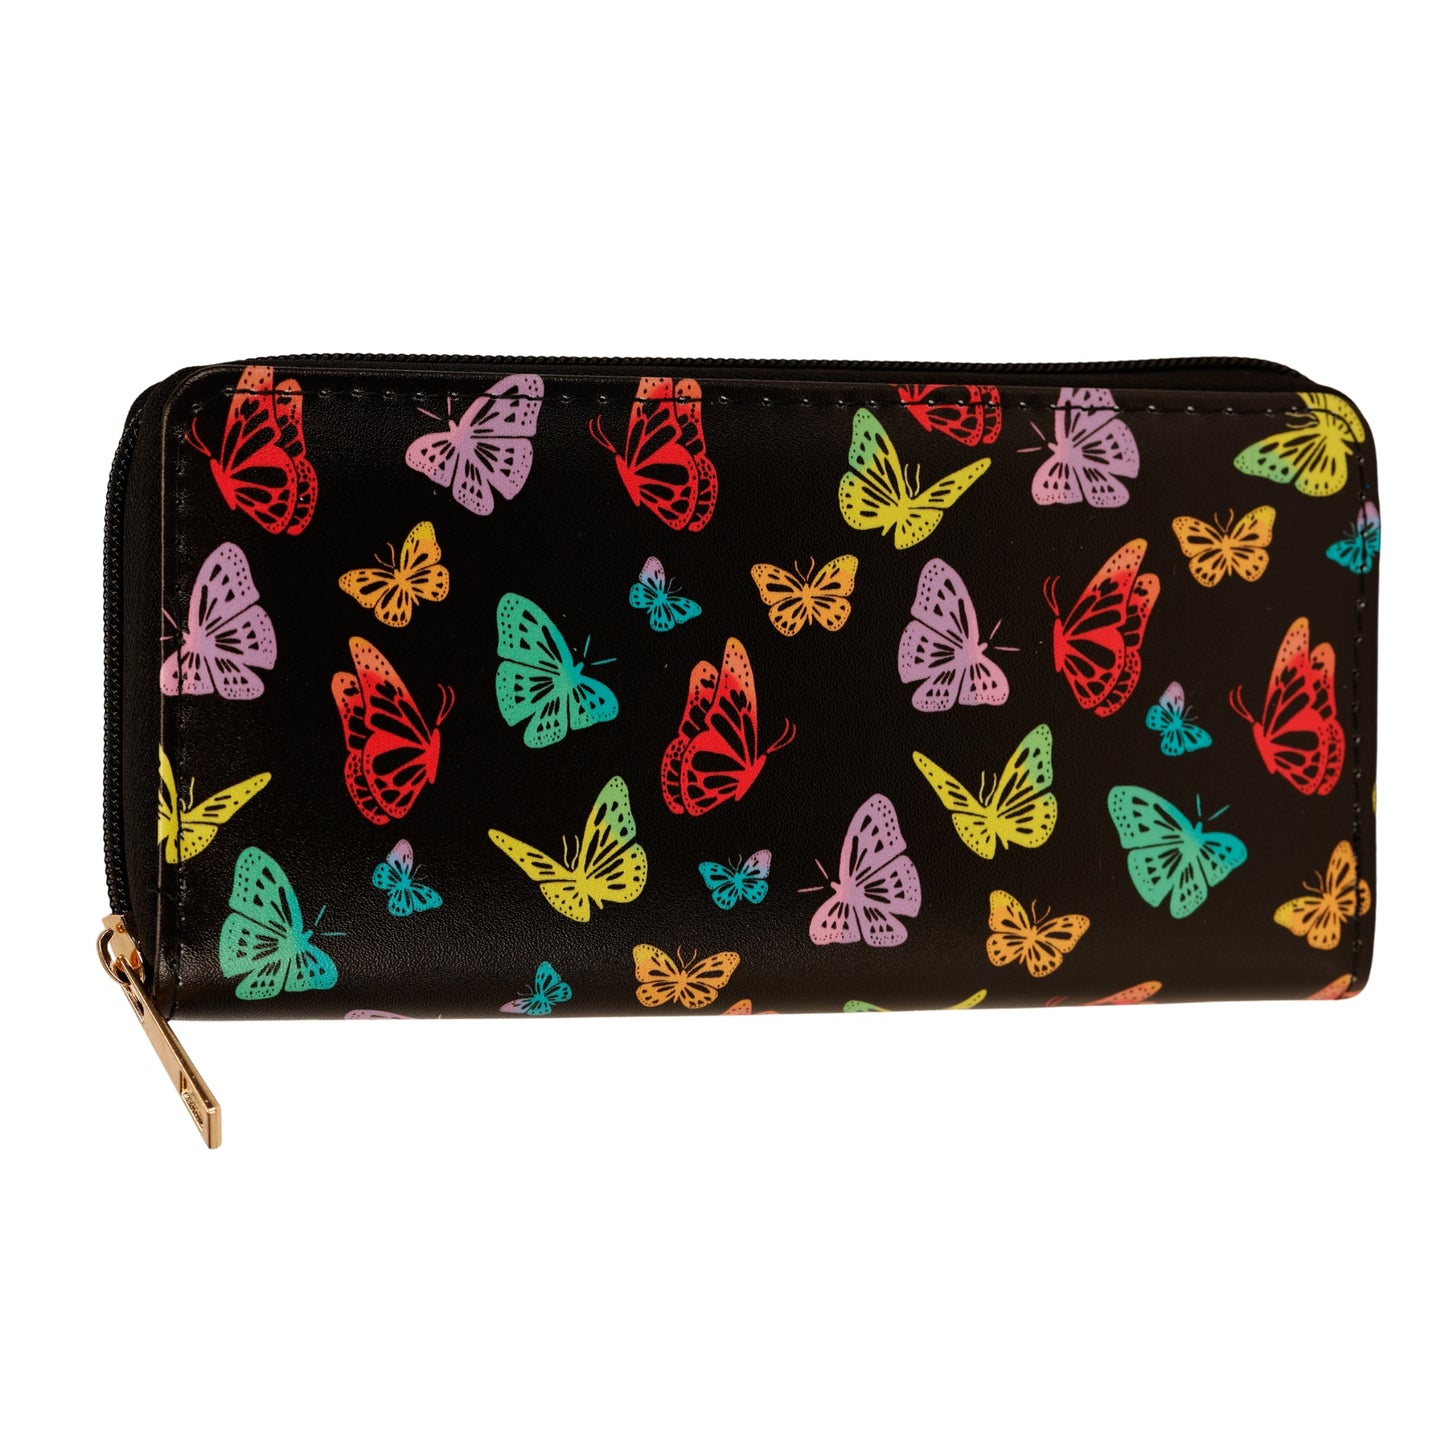 Kaleidoscope Wallet by RainbowsAndFairies.com (Monarch Butterfly - Butterflies - Purse - Quirky Bag) - SKU: BG_WALLT_KSCOP_ORG - Pic 01